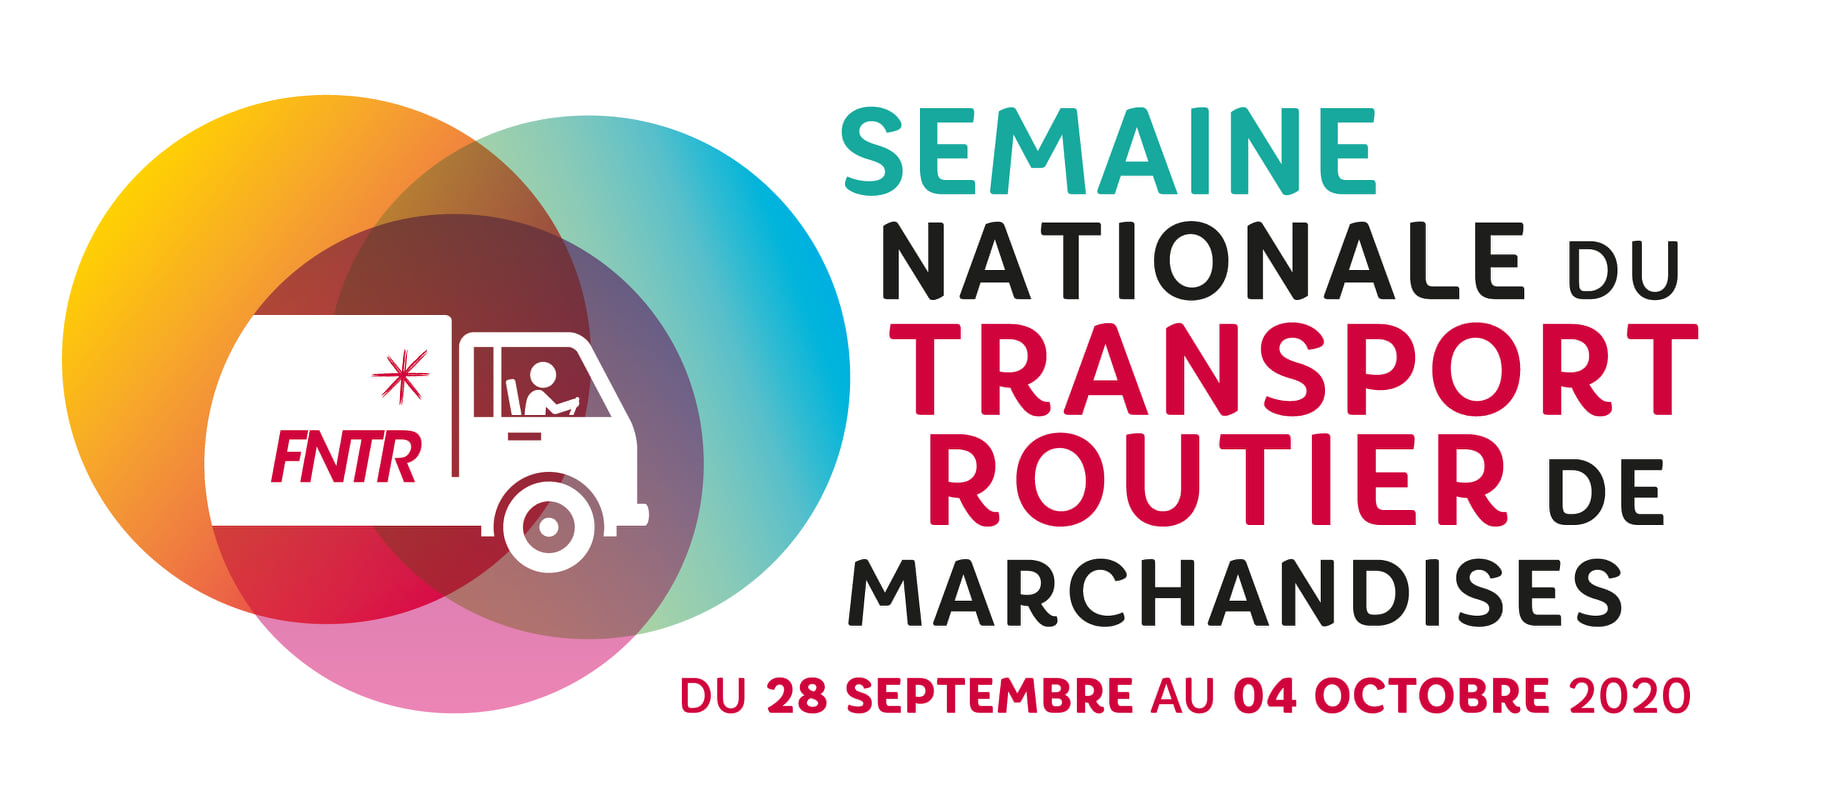 semaine nationale du transport routier de marchandise